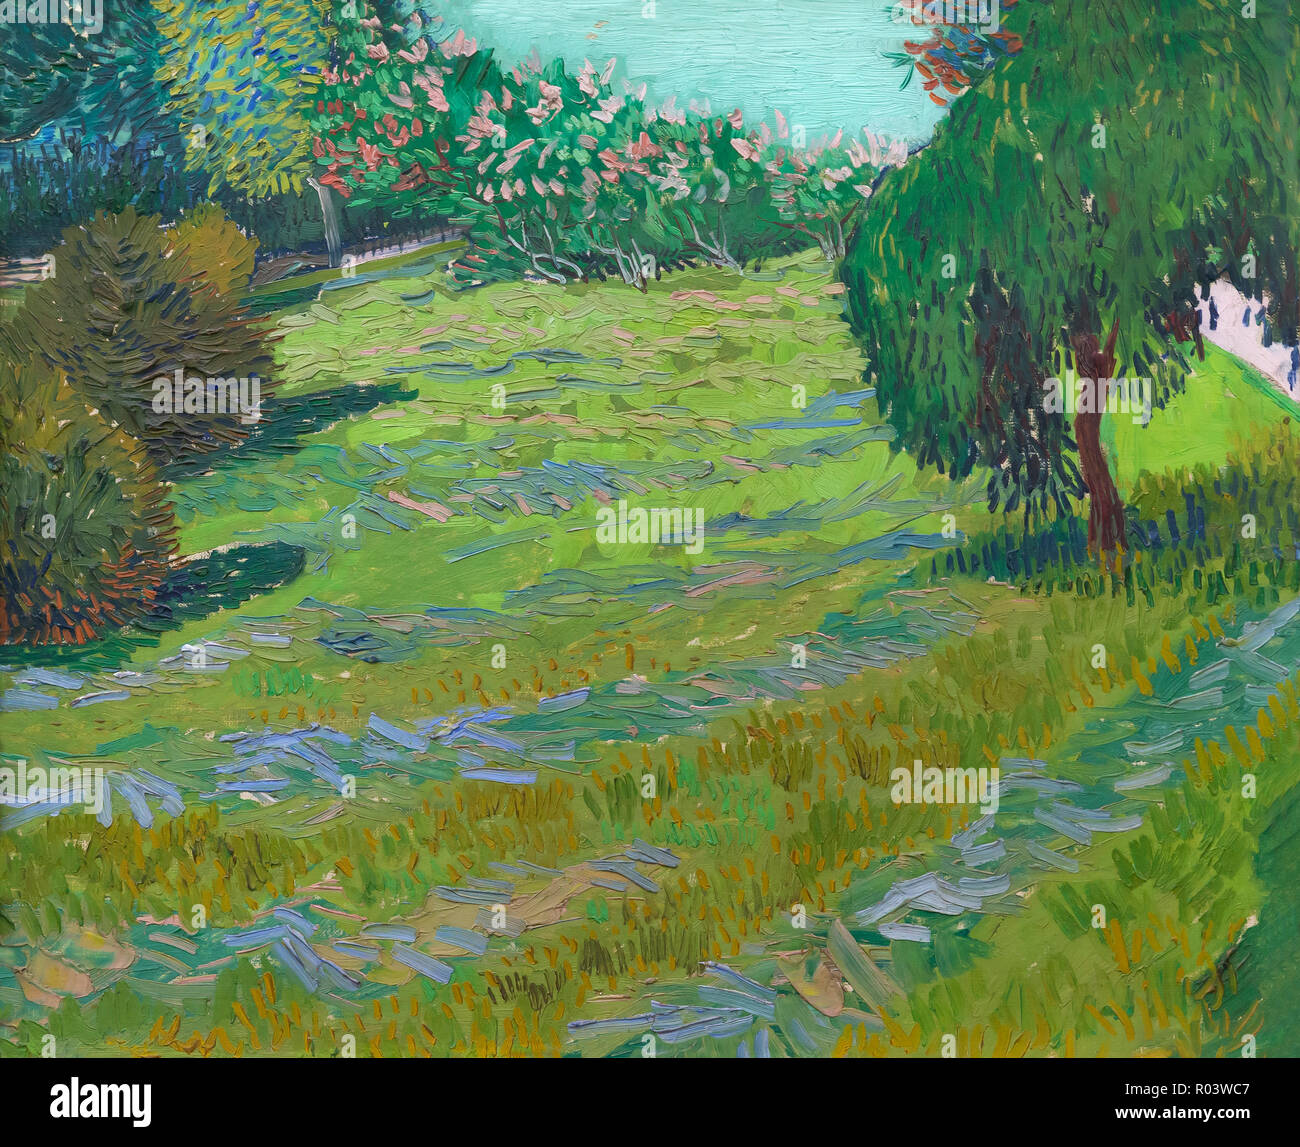 Giardino con salice piangente, prato soleggiato in un parco pubblico, Arles, Vincent van Gogh, 1888, Zurigo Kunsthaus di Zurigo, Svizzera, Europa Foto Stock